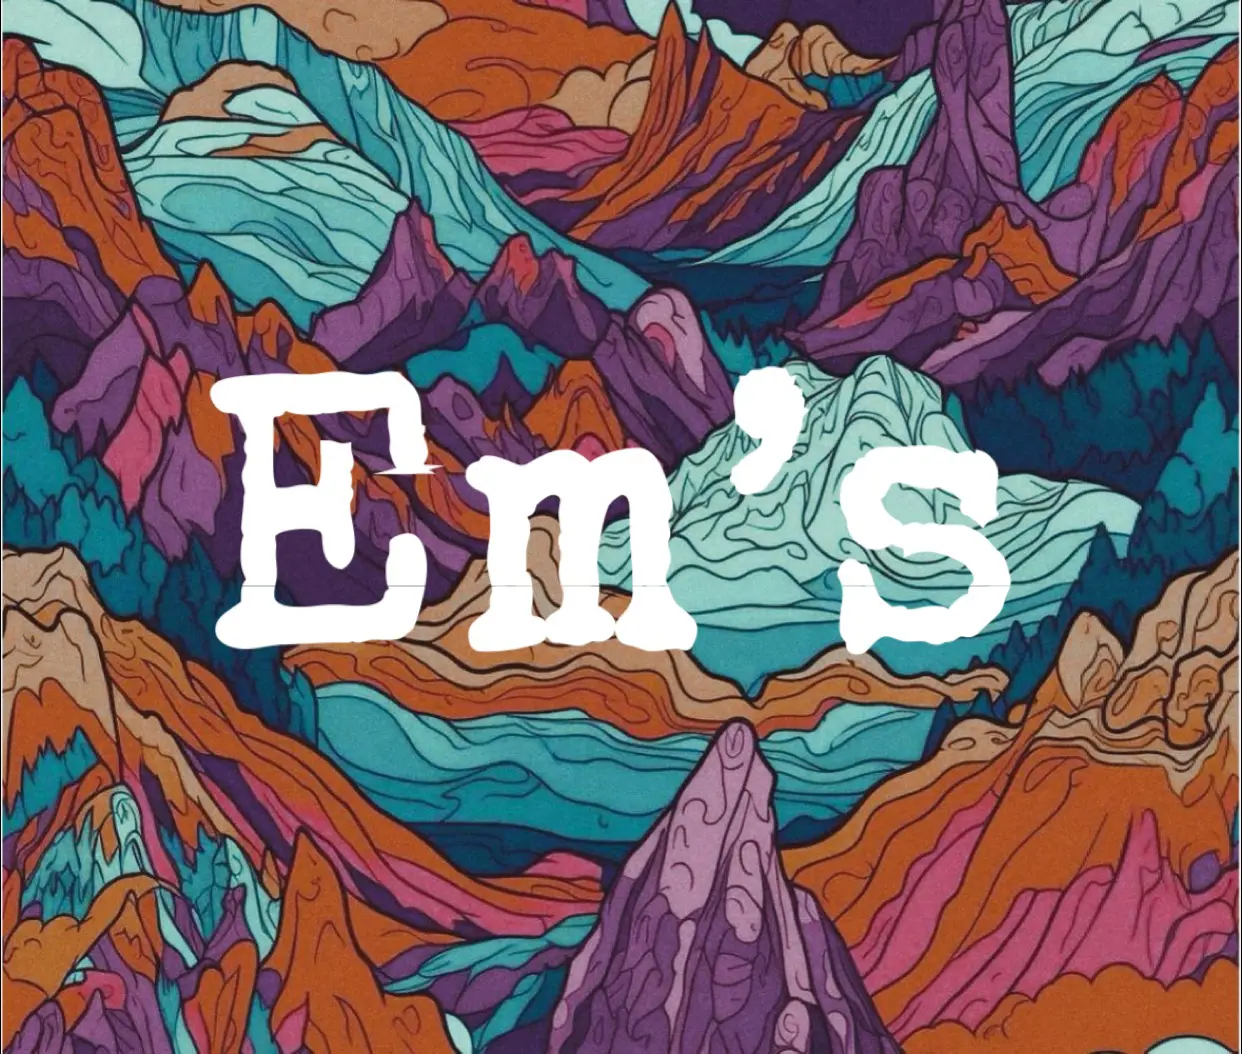 Em’s